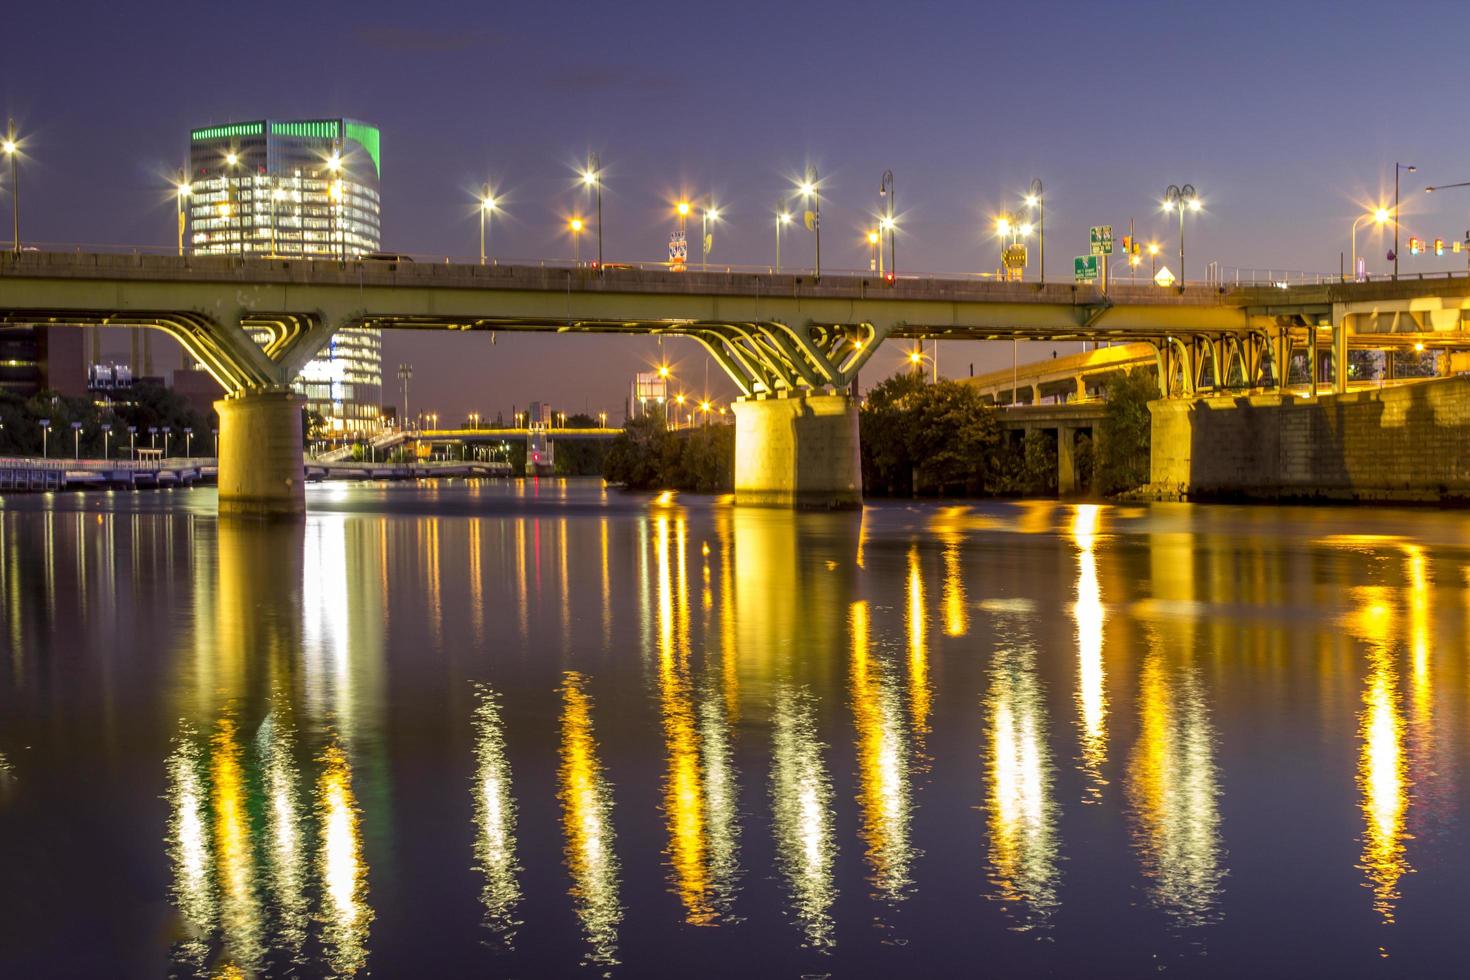 Filadélfia, 13 de novembro de 2016 - ponte refletida na água à noite foto